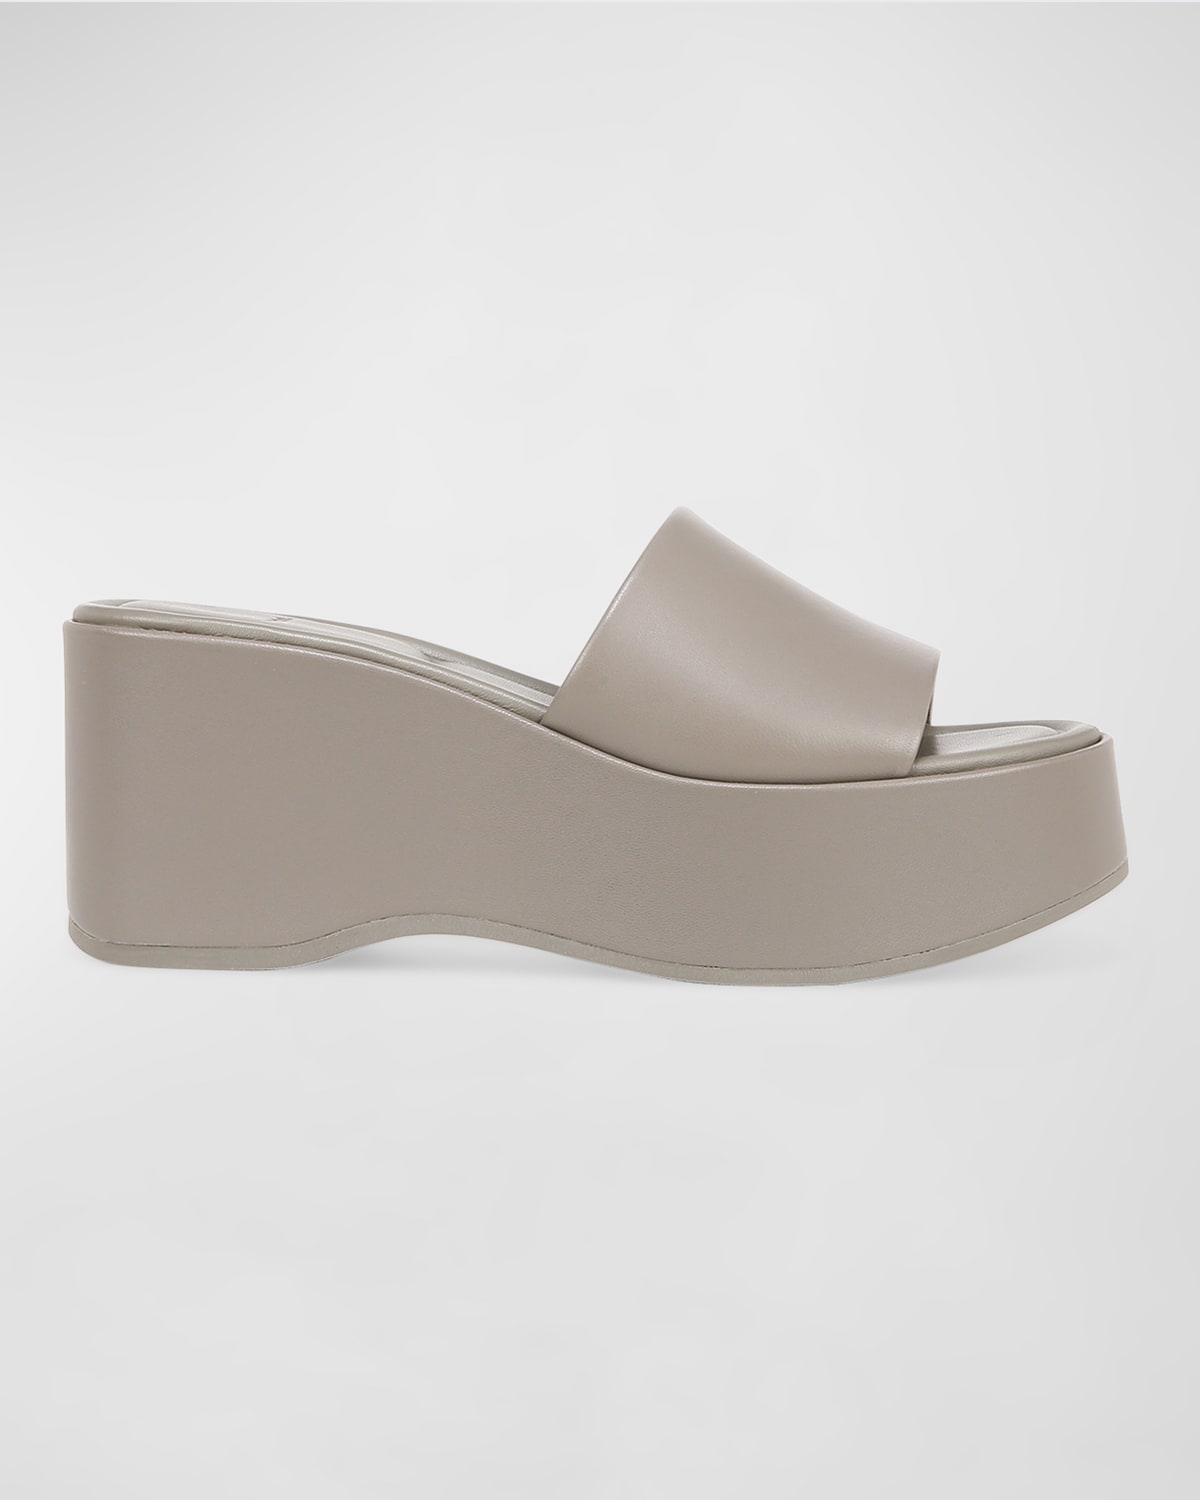 Polina Leather Slide Platform Sandals